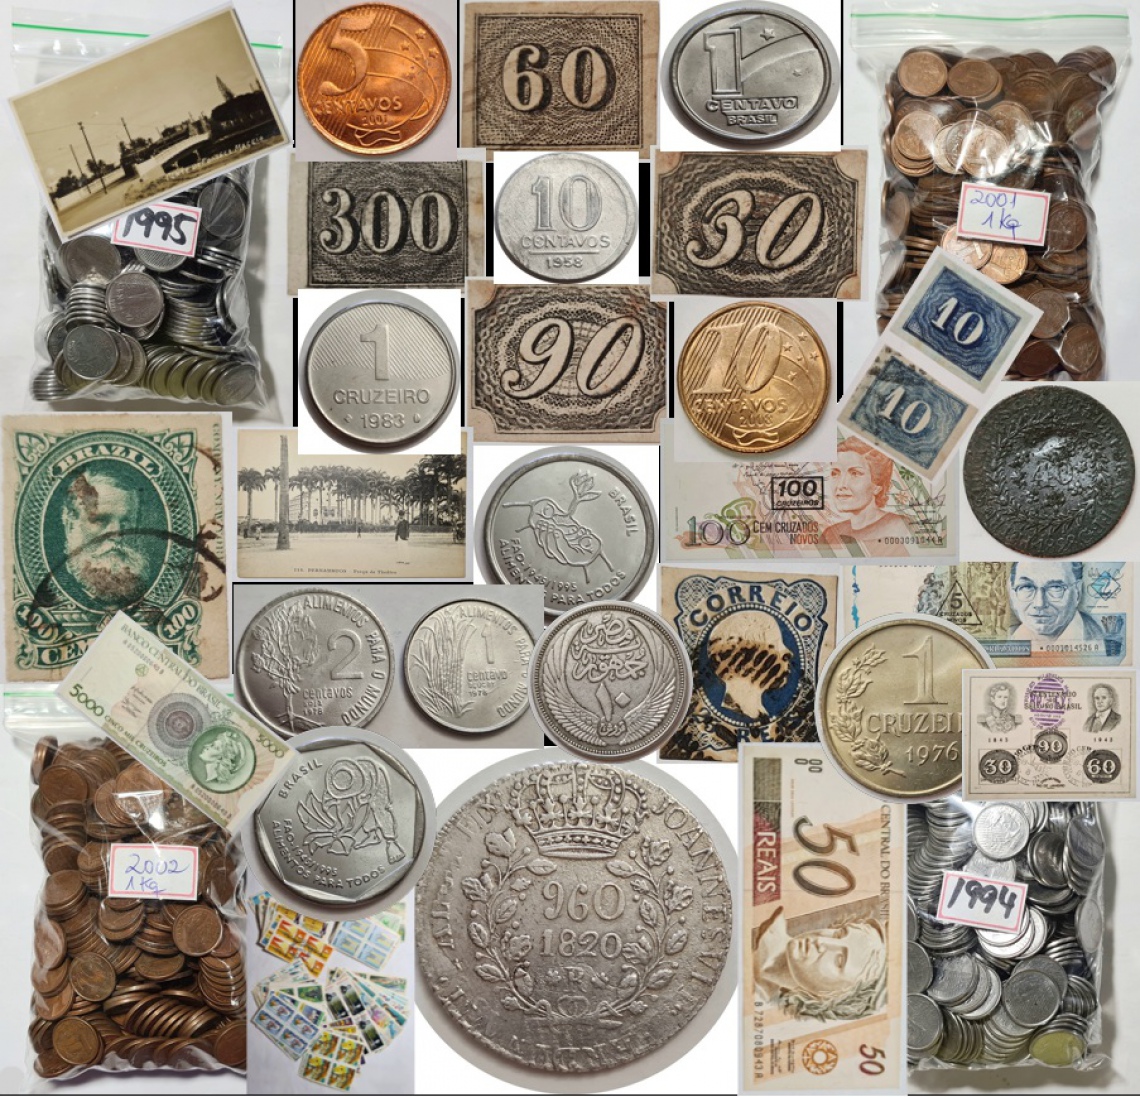 Leilão de Colecionismo Geral - moedas, cédulas, selos, postais e afins.